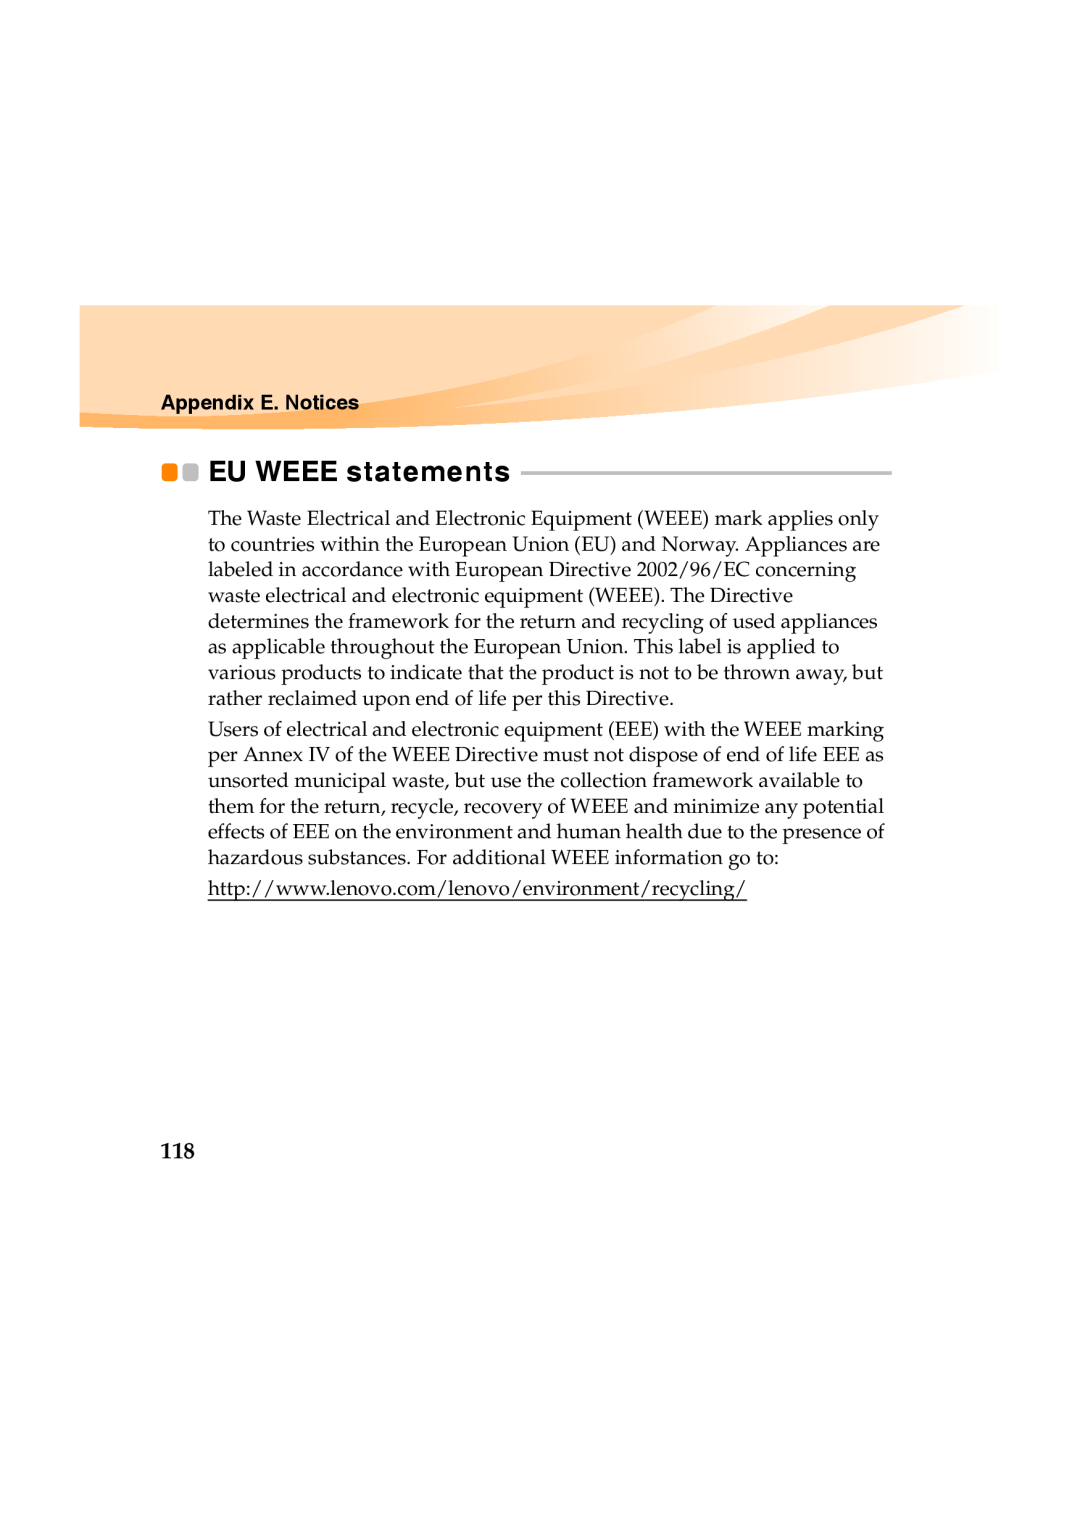 Lenovo Y460 manual EU WEEE statements, Appendix E. Notices 